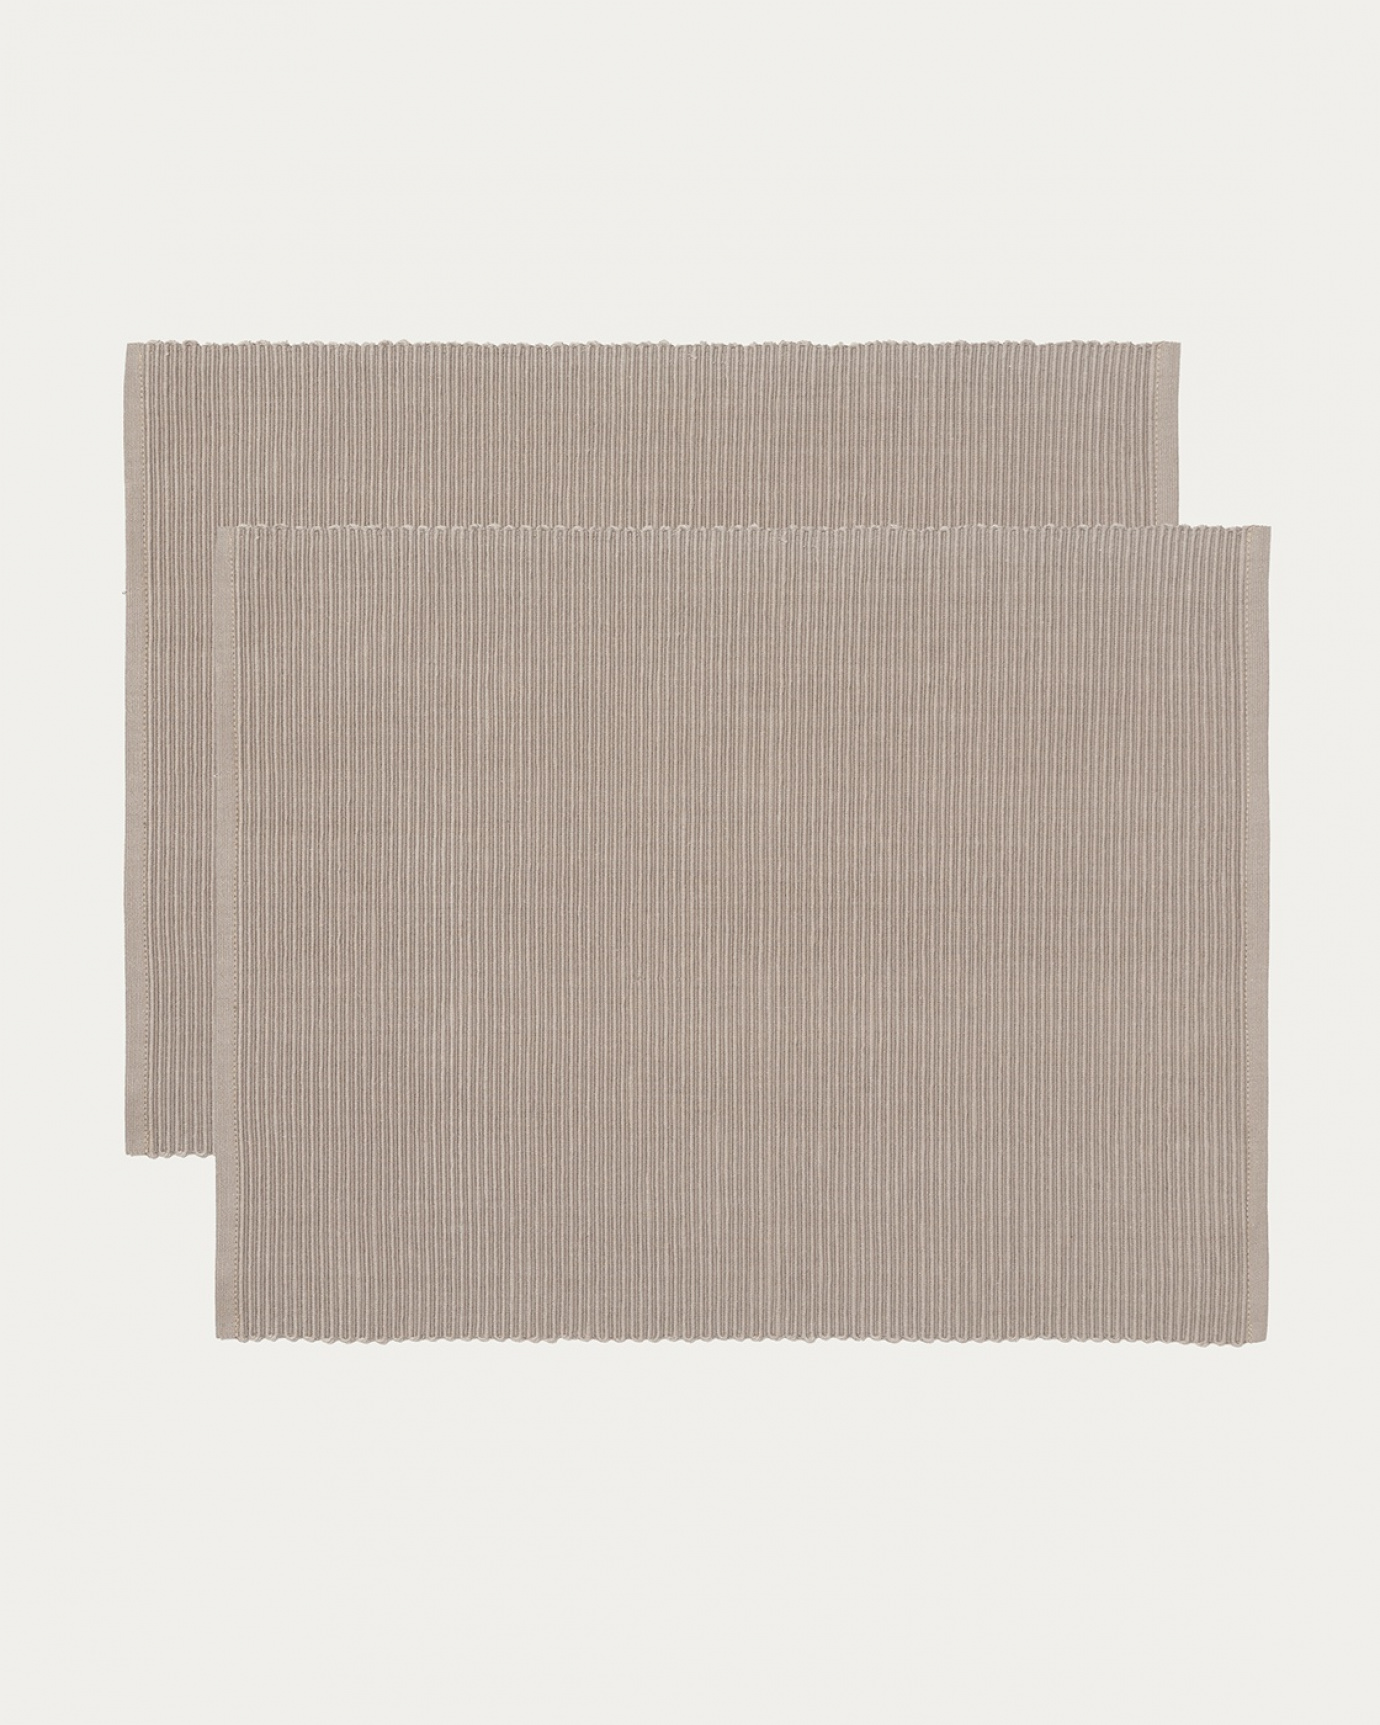 Produktbild maulwurfbraun UNI Tischset aus weicher Baumwolle in Rippenqualität von LINUM DESIGN. Größe 35x46 cm und in 2er-Pack verkauft.